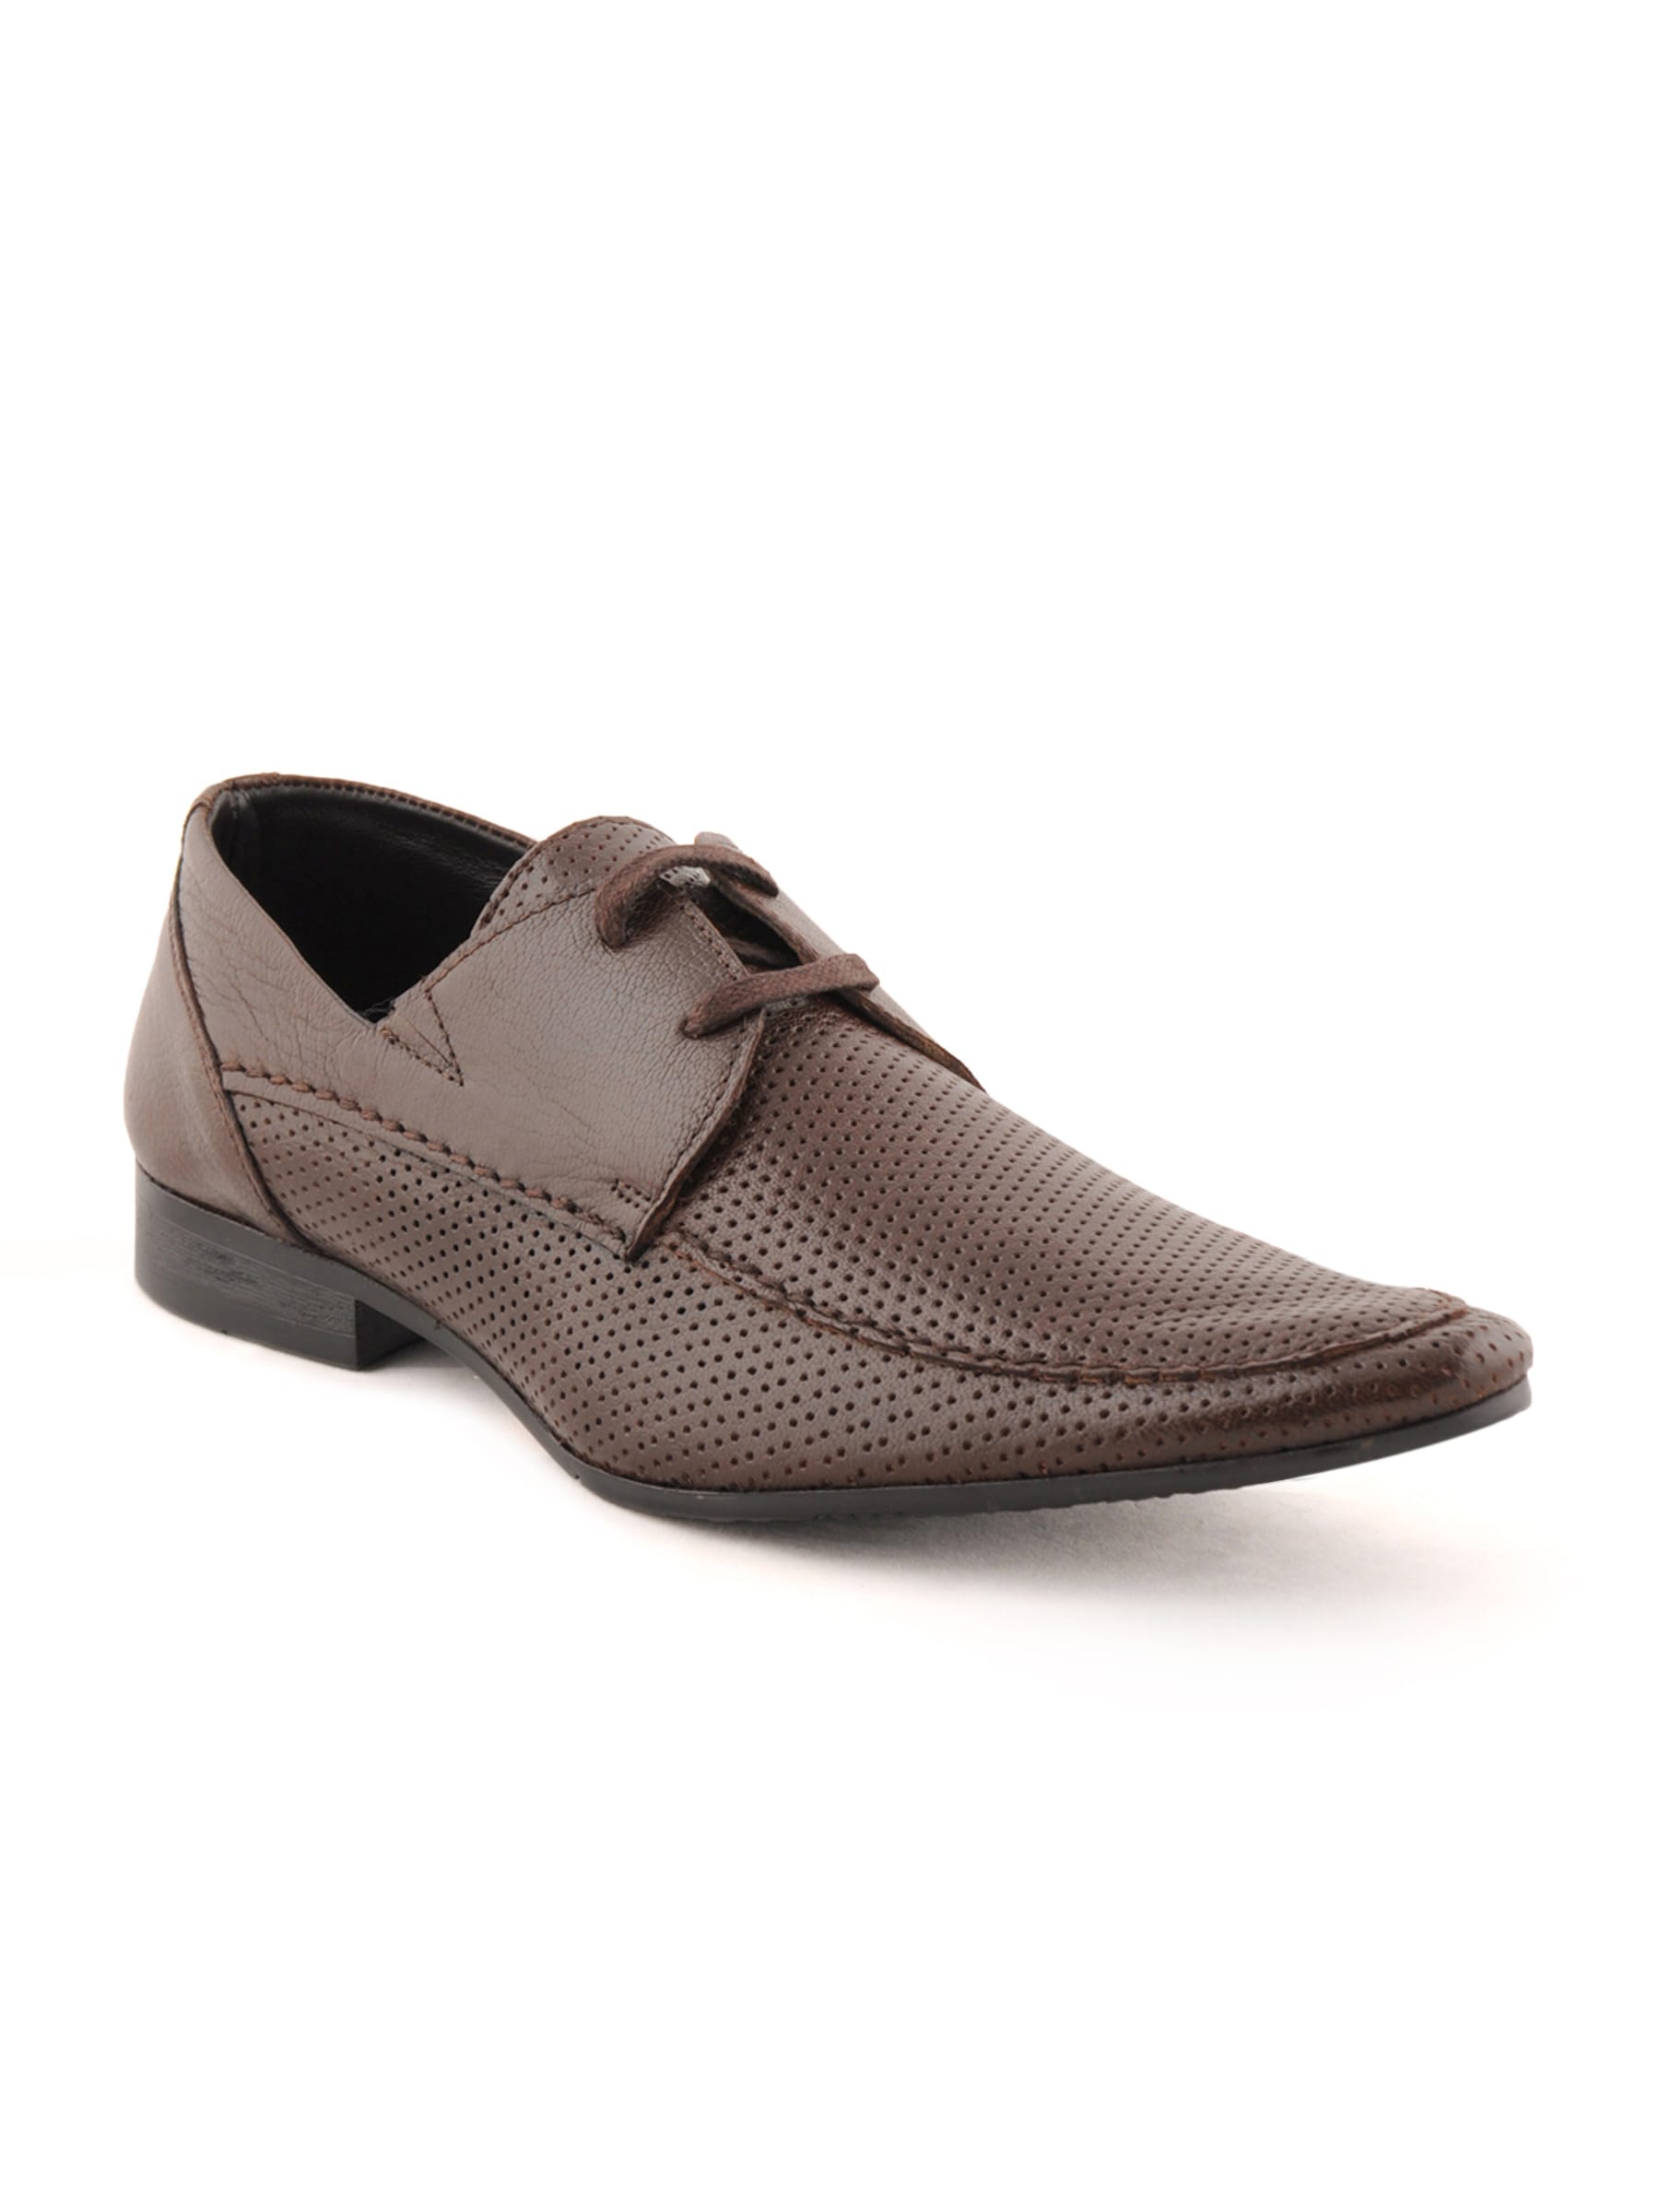 Franco Leone Men Formal Brown Formal Shoes